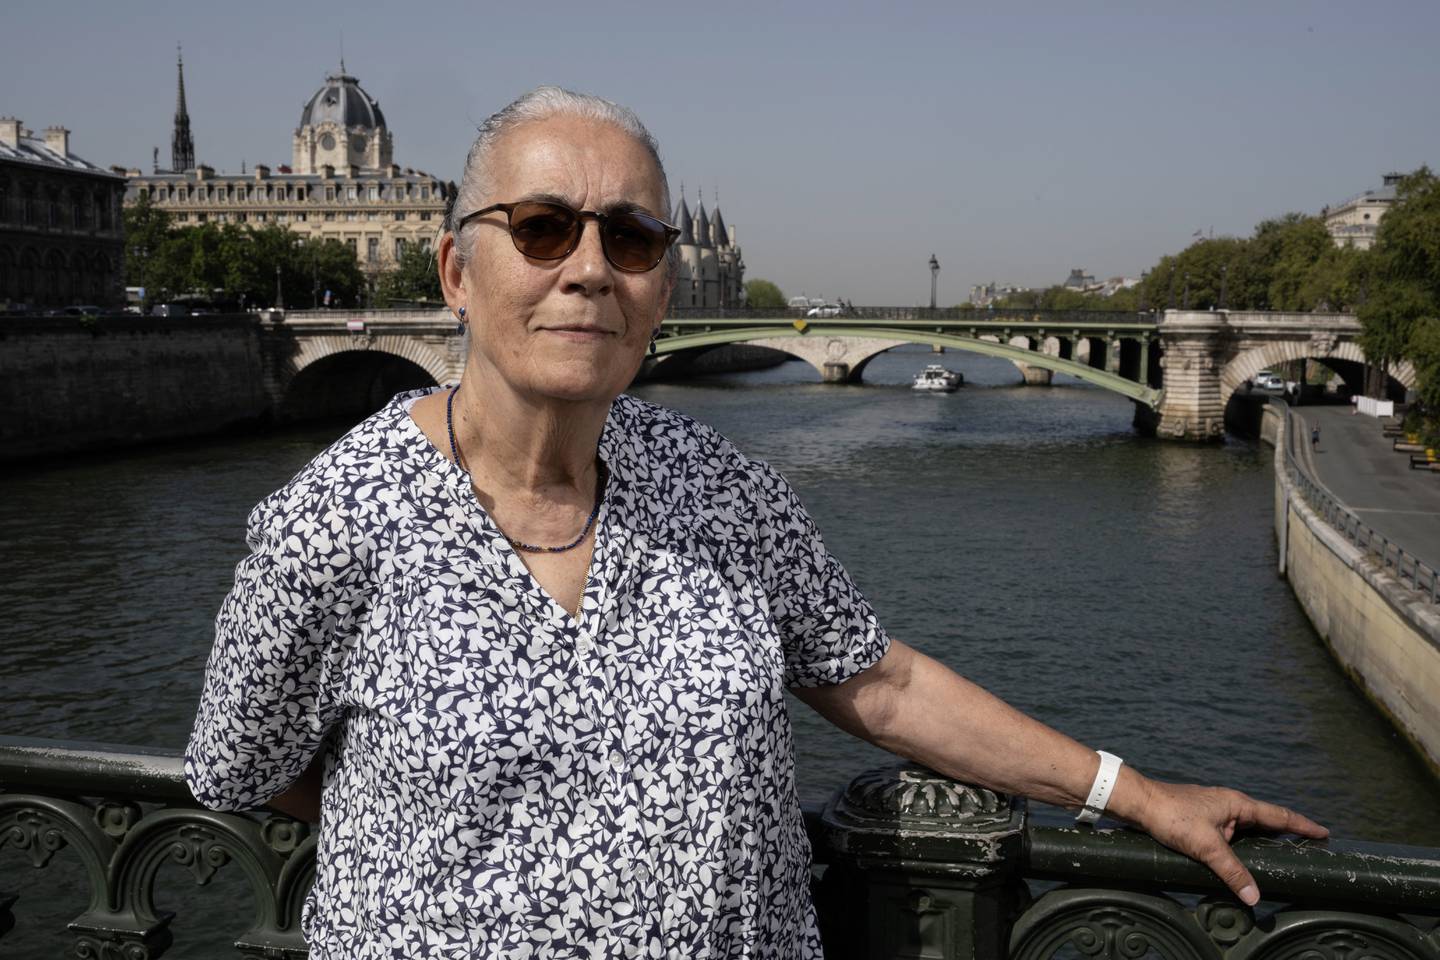 María Eugenia Mignot-Verscheure, exiliada chilena de setenta y cinco años, que abandonó su país hace 50 años durante la dictadura de Pinochet y fue recibida en Francia, posa en un puente sobre el río Sena